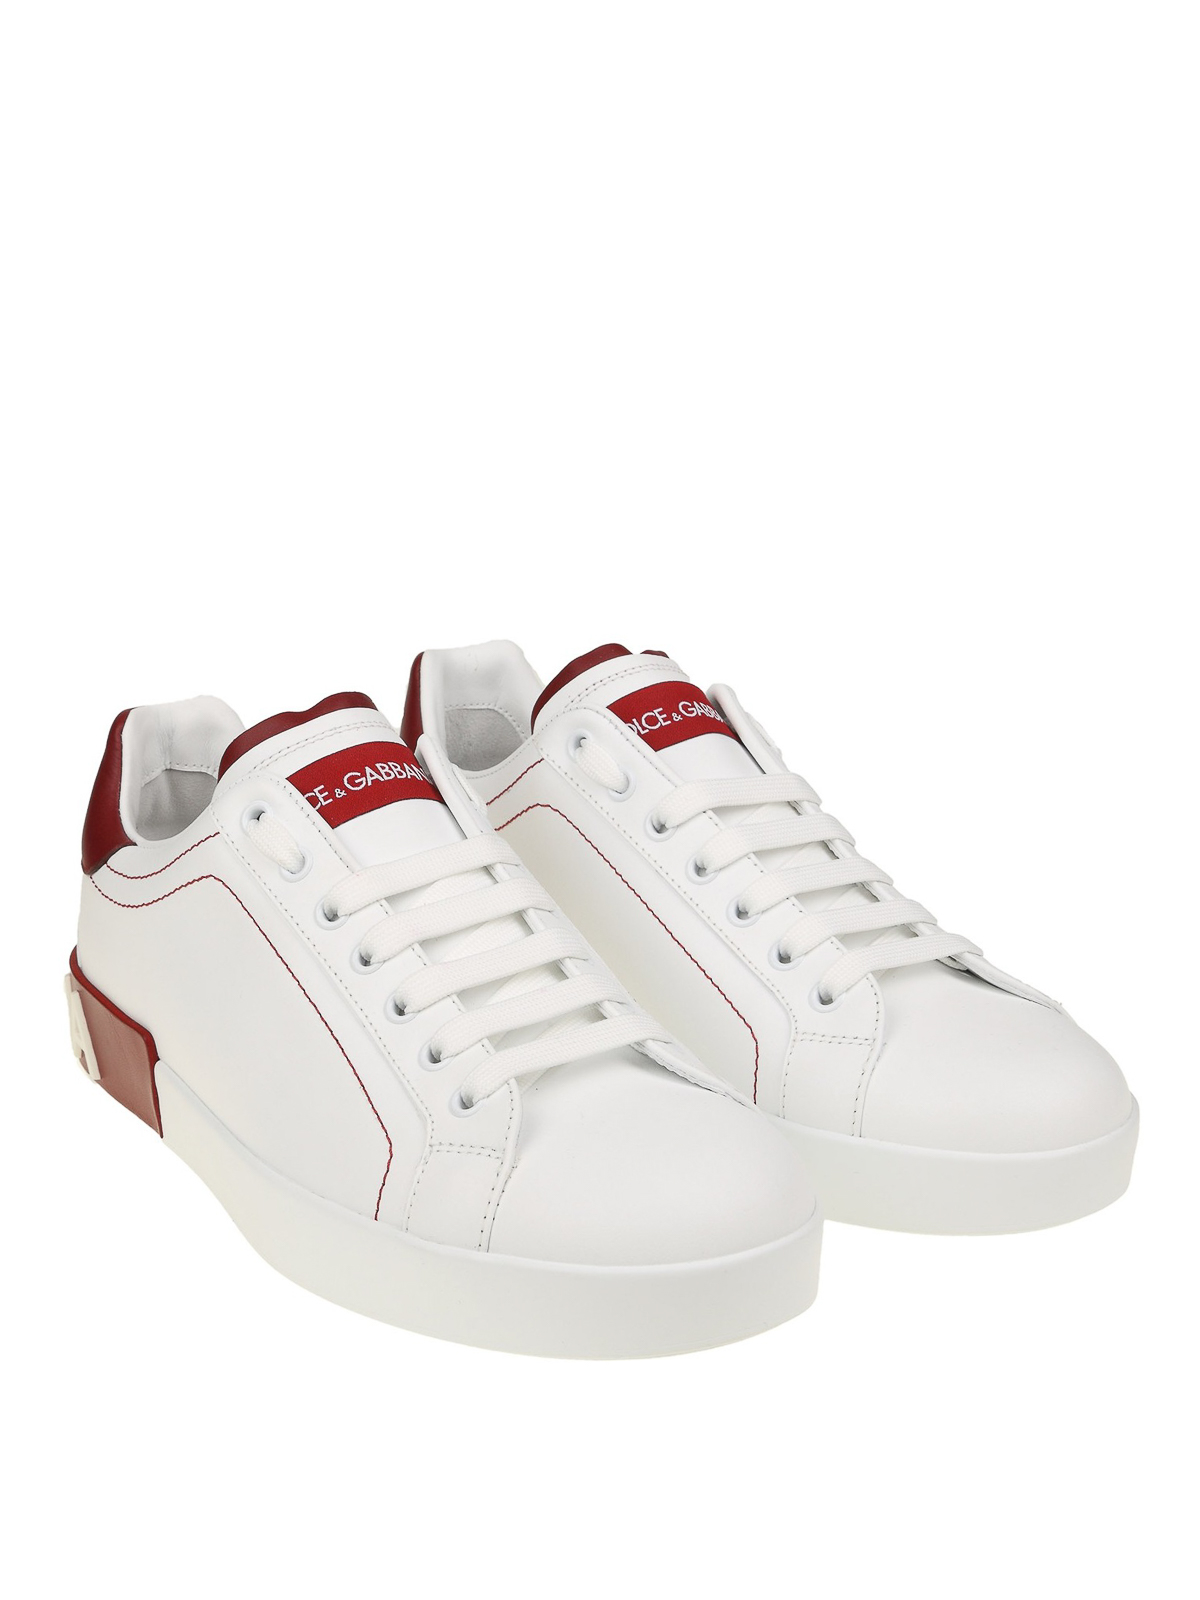 Dolce & Gabbana - Portofino white and red nappa sneakers - trainers ...